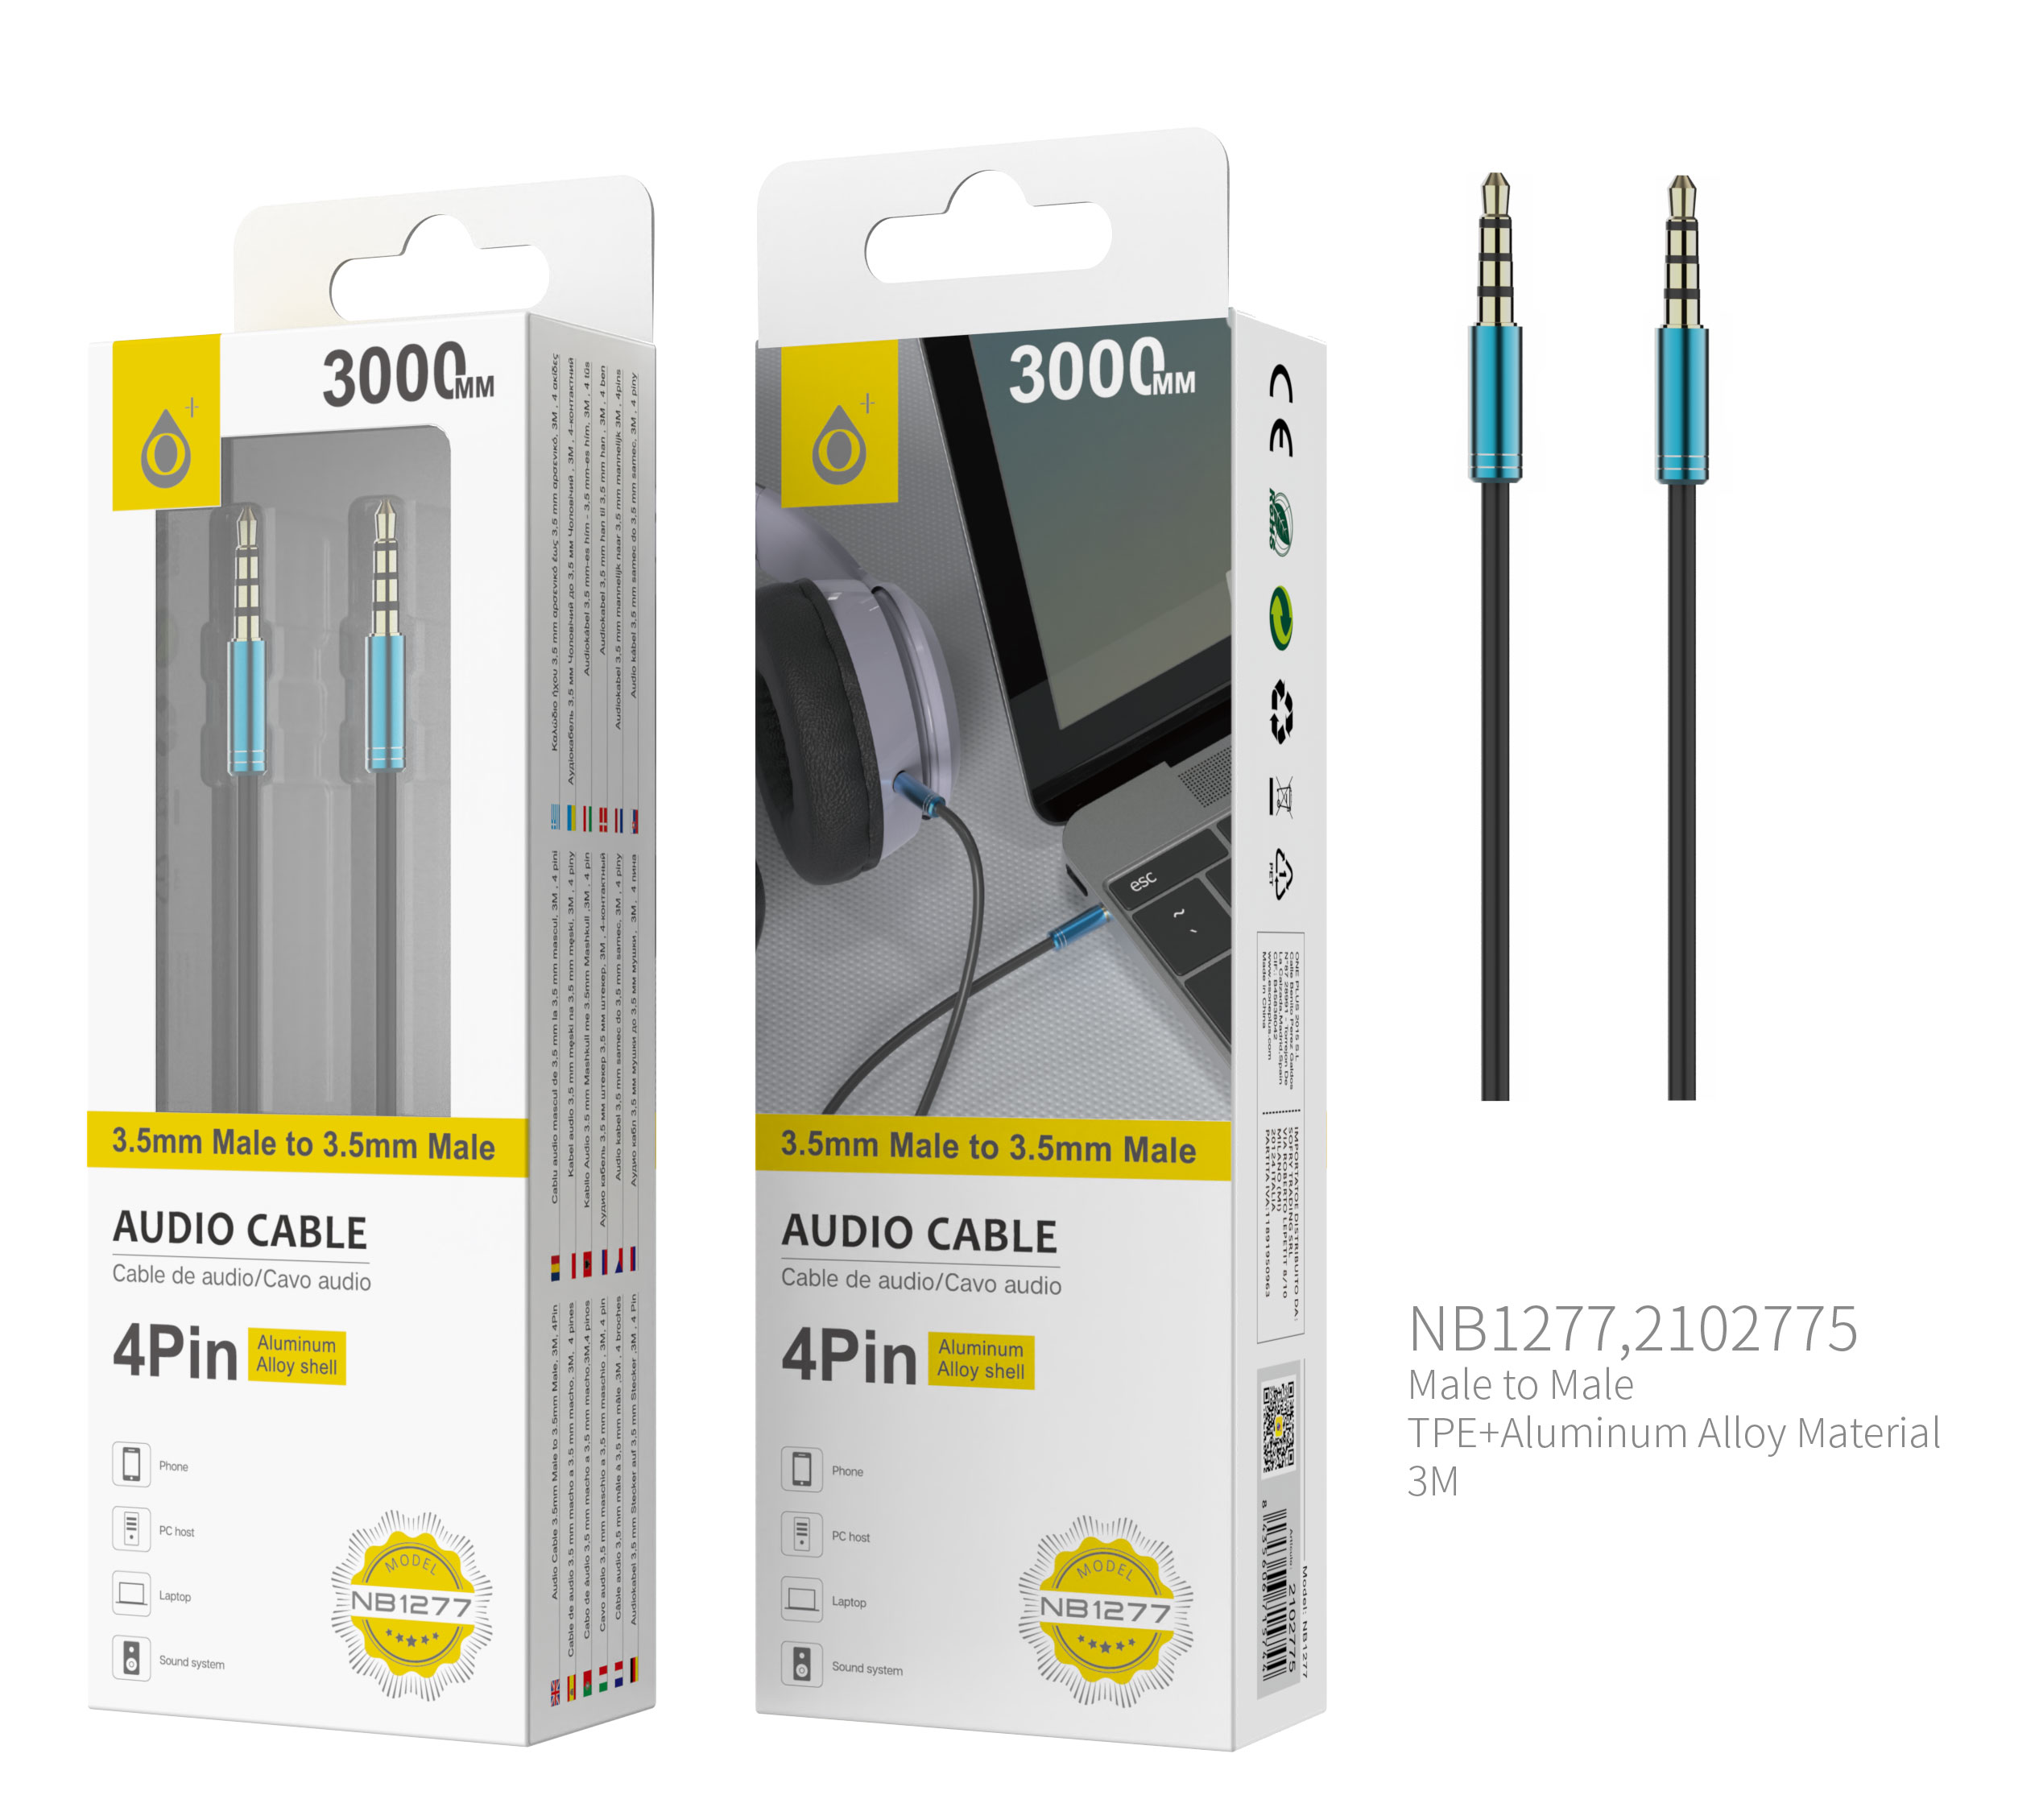 NB1277 AZ Cable de Audio Fox de Aluminio de 3.5mm a 3.5mm Macho a Macho, 4Pin, Longitud 3 M, Azul